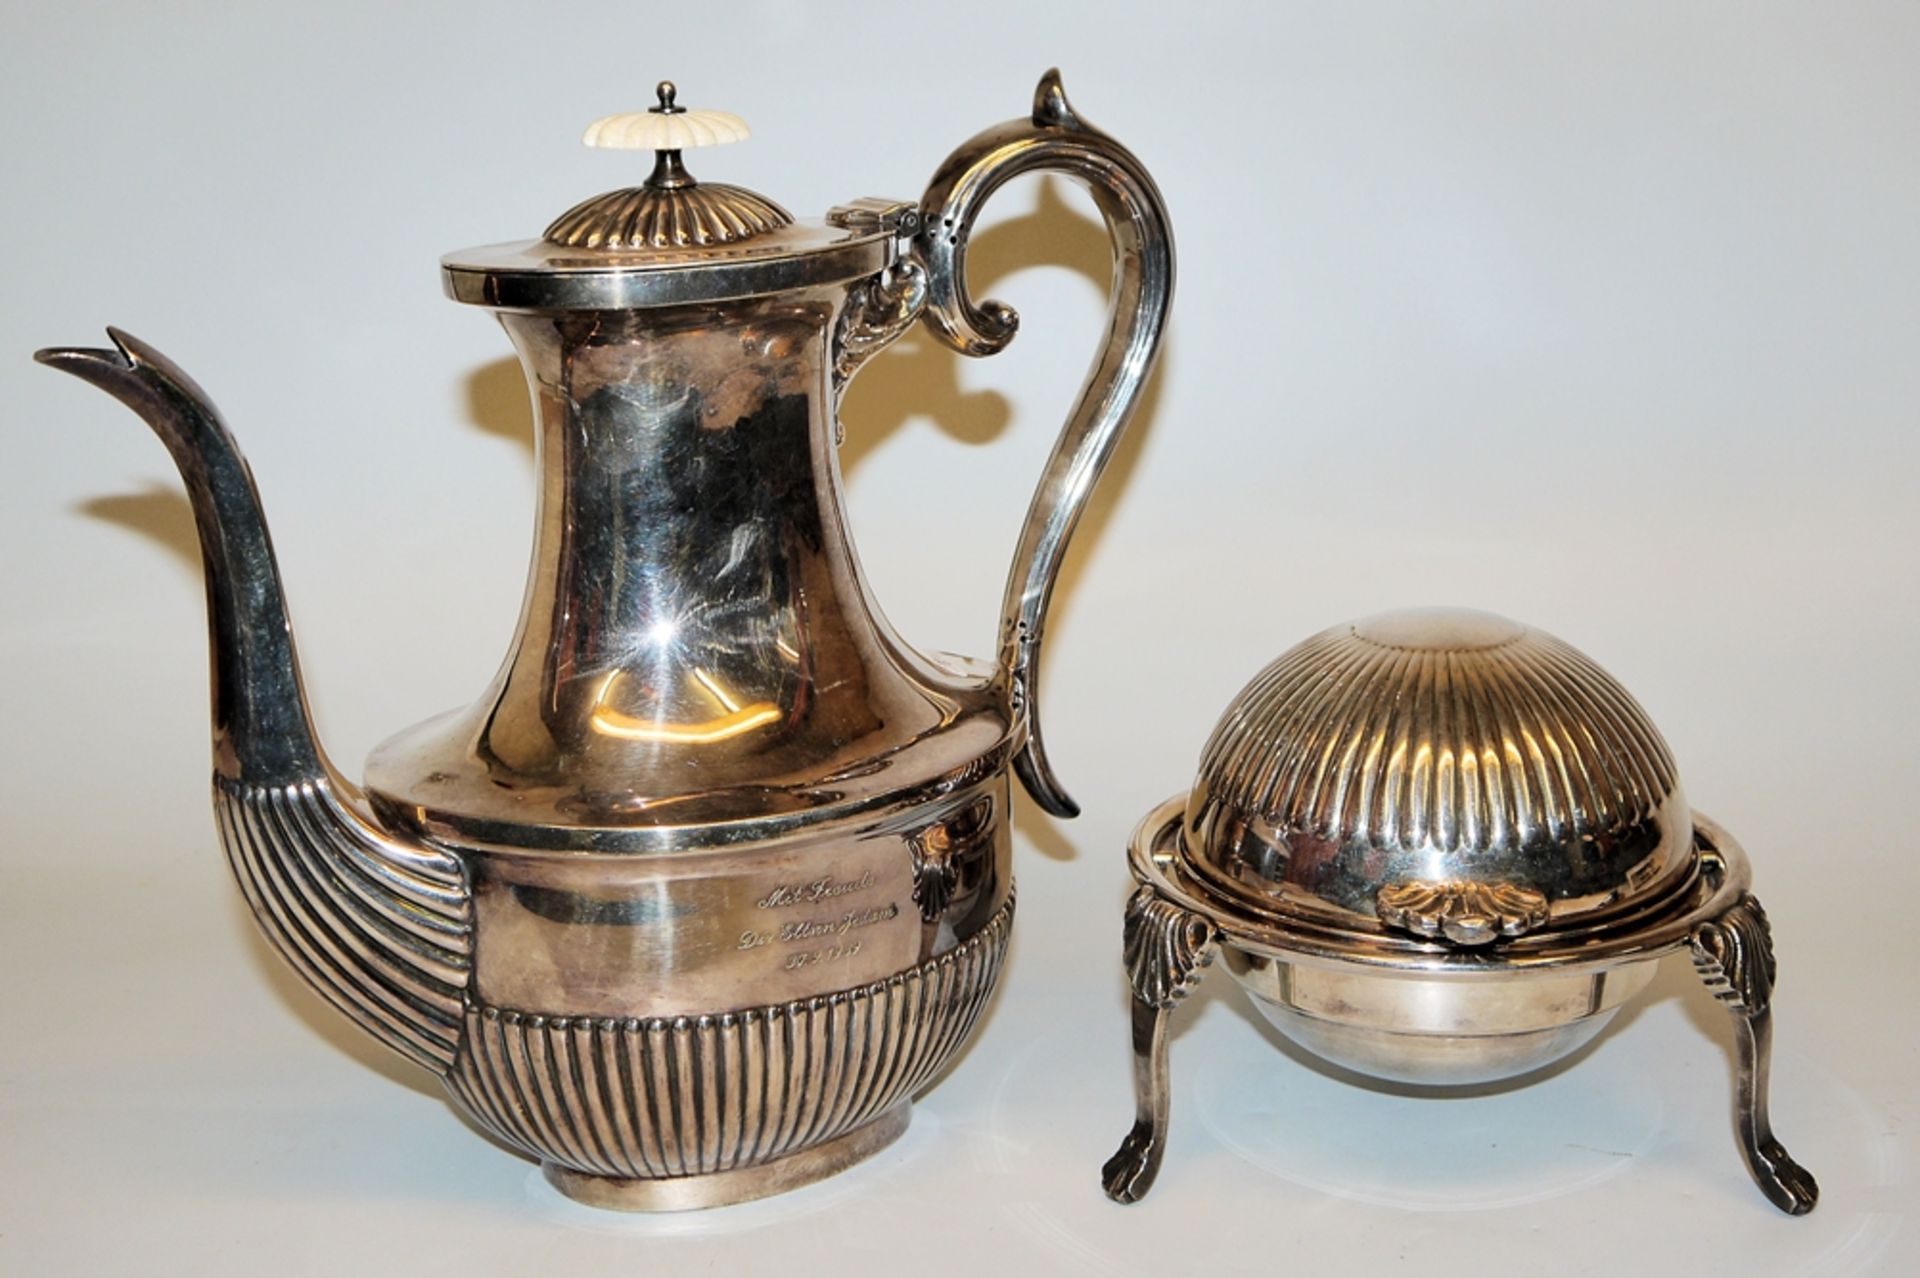 Repräsentativer Champagner-Kühler, viktorianische Kaviarschale und Kaffeekanne in Silverplate - Bild 2 aus 2